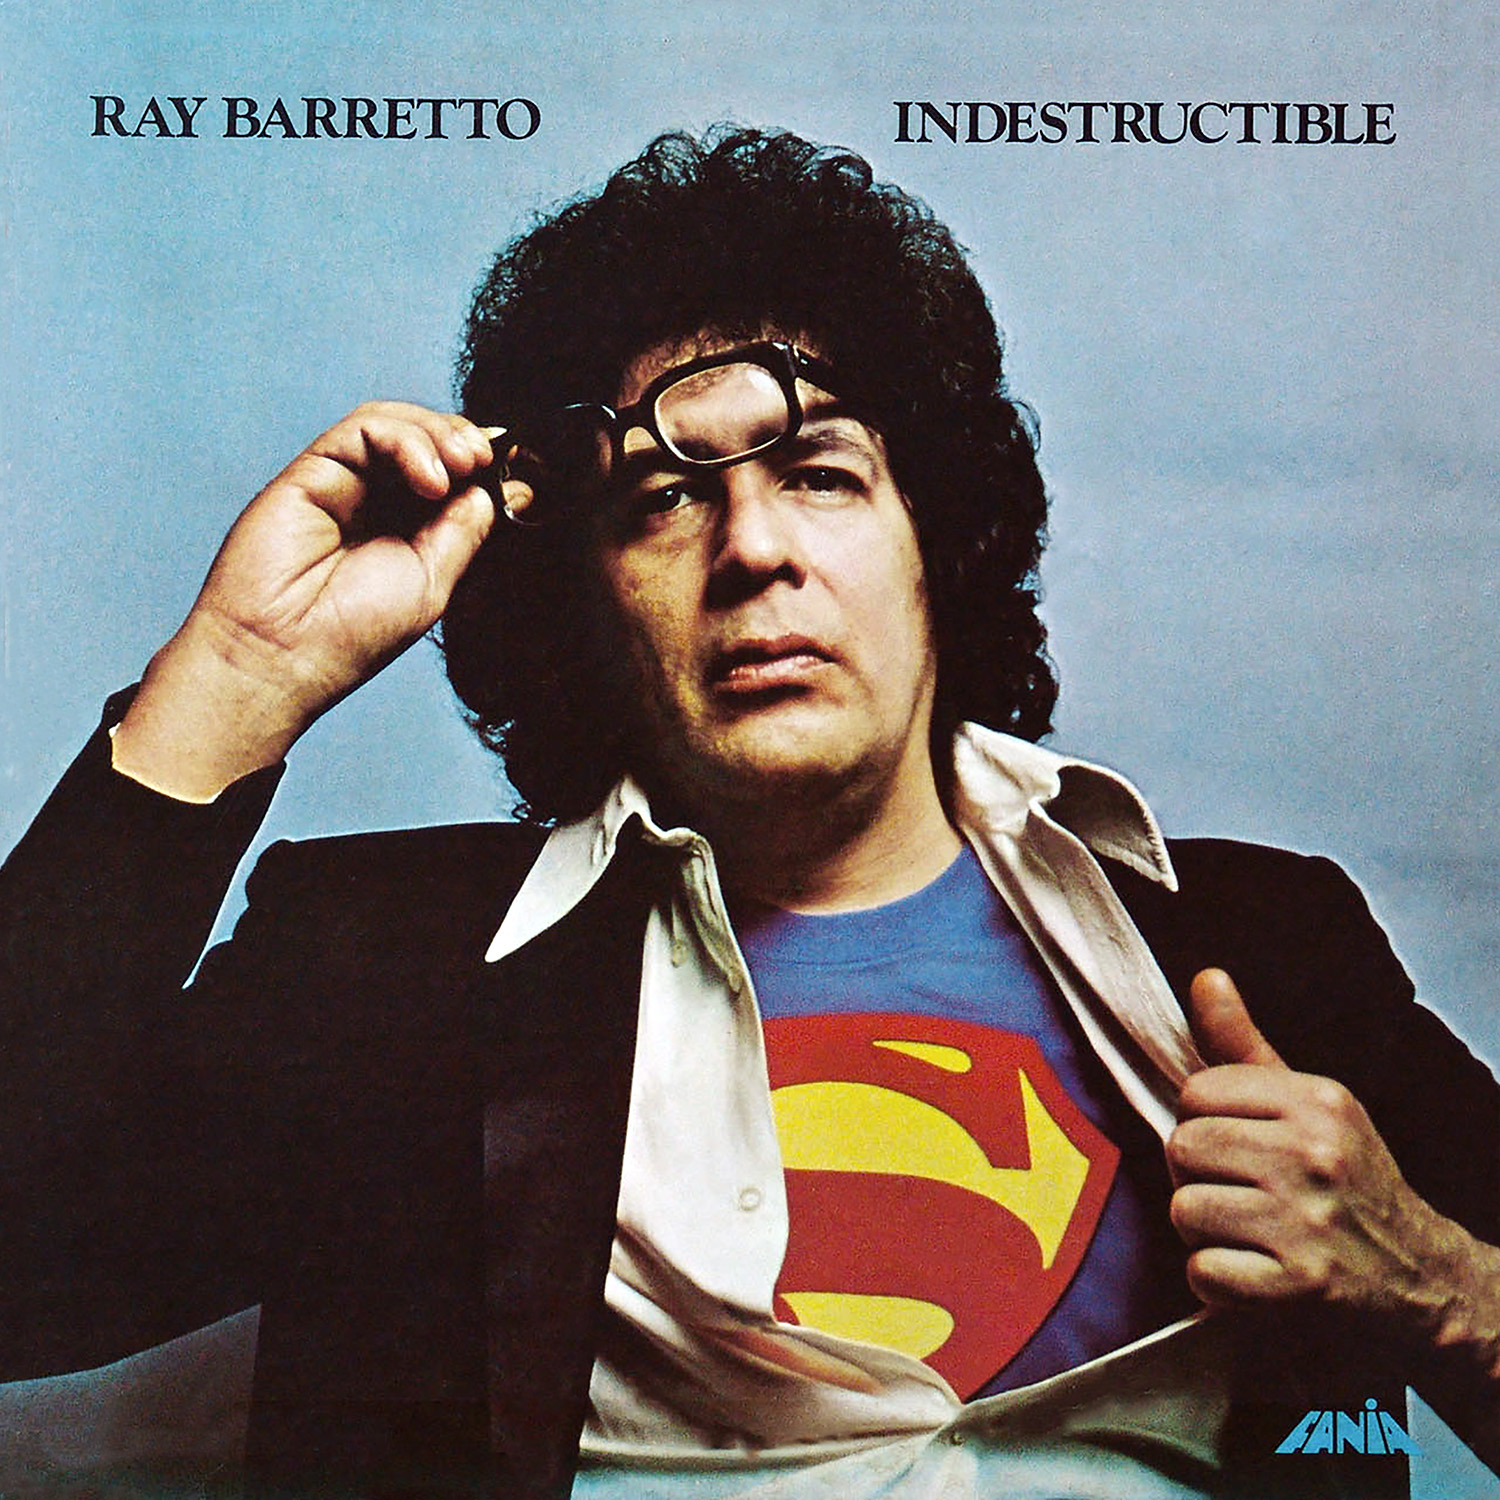 Ray Barretto - Indestructible album cover